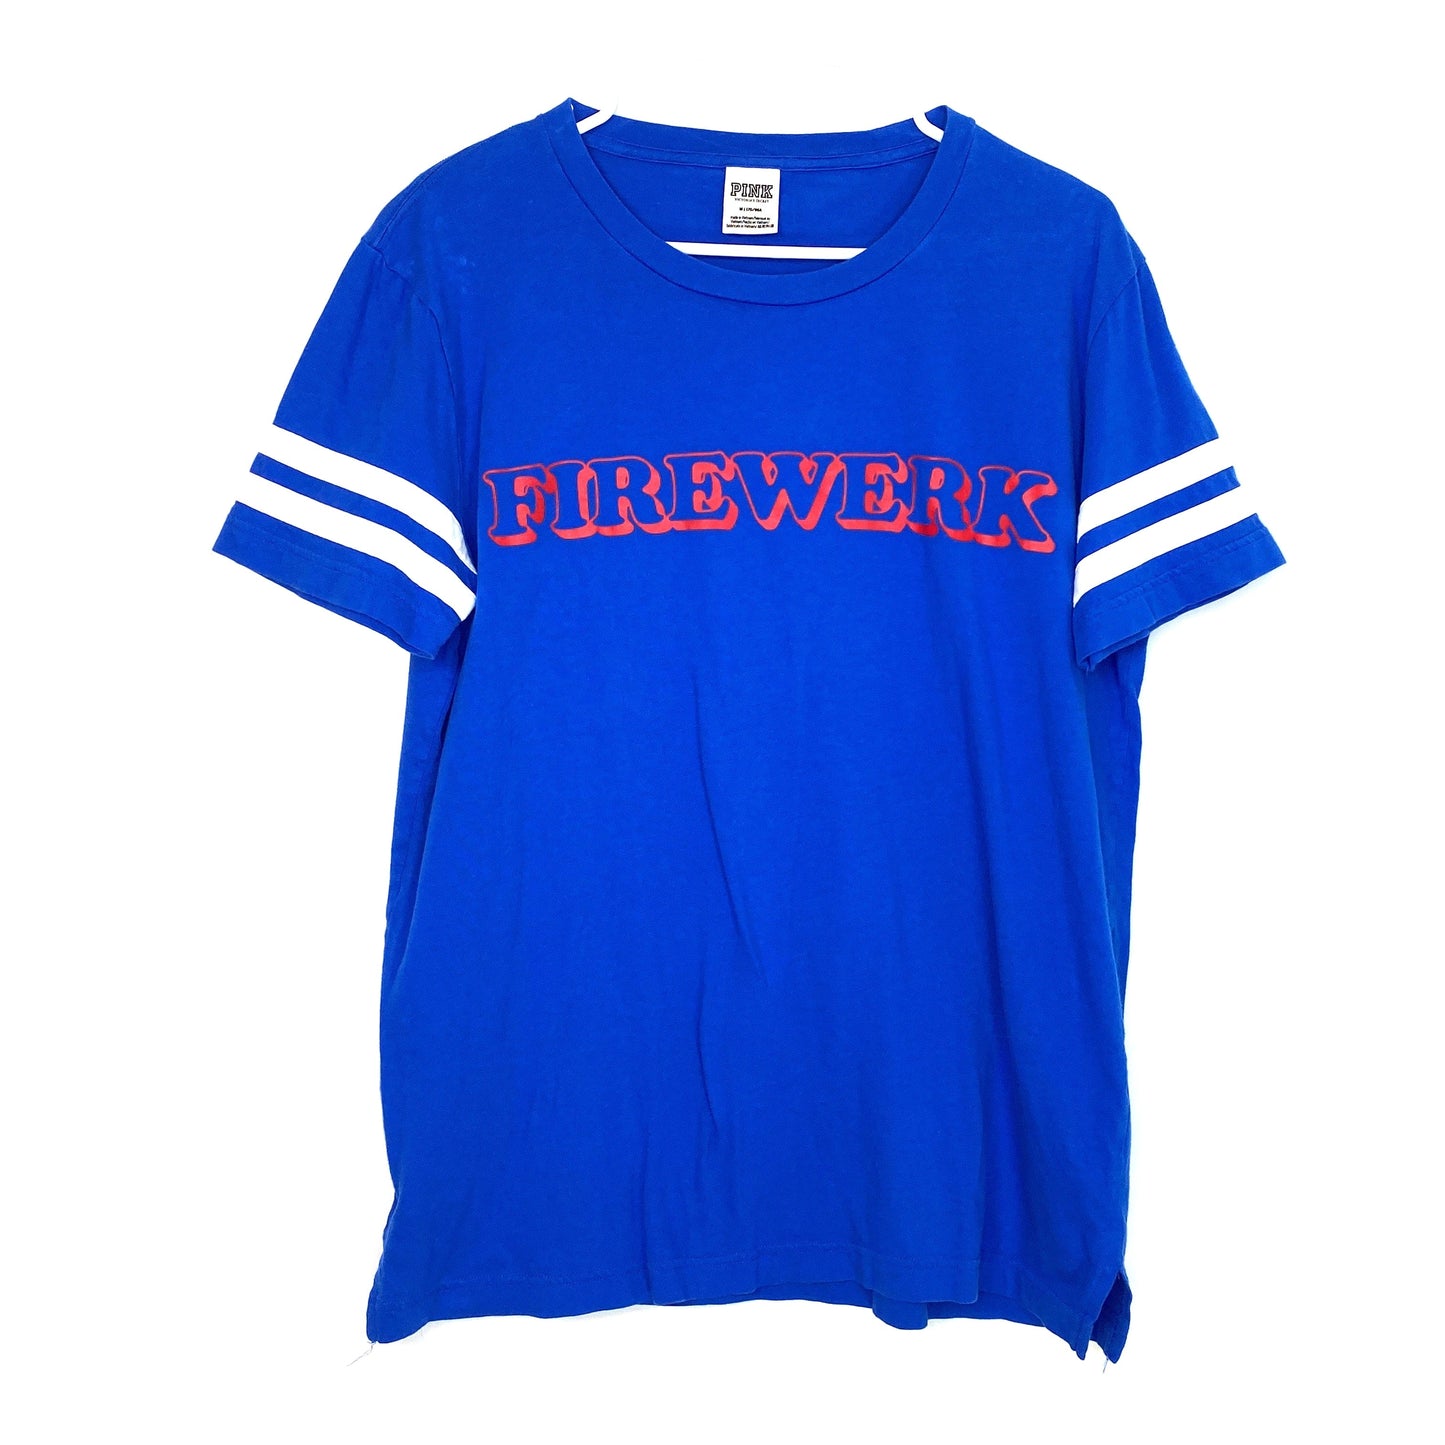 PINK VS Womens Size M Blue FIREWERK Short Sleeve T-Shirt